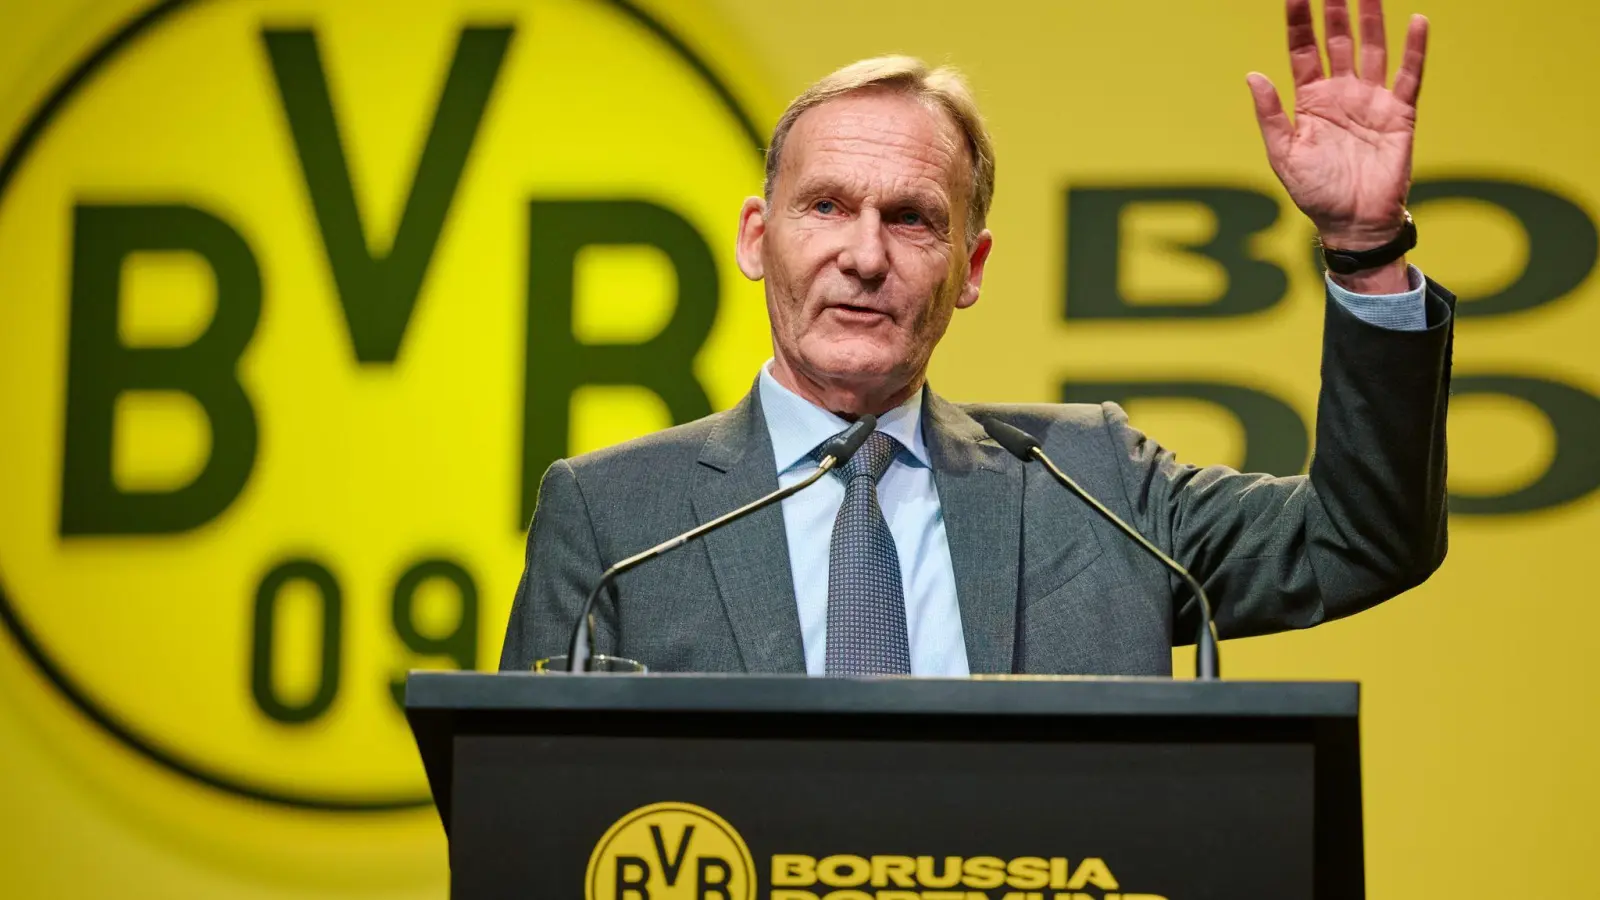 Geschäftsführer Hans-Joachim Watzke ha sich bei der Mitgliederversammlung des BVB für einen Investor ausgesprochen. (Foto: Bernd Thissen/dpa)